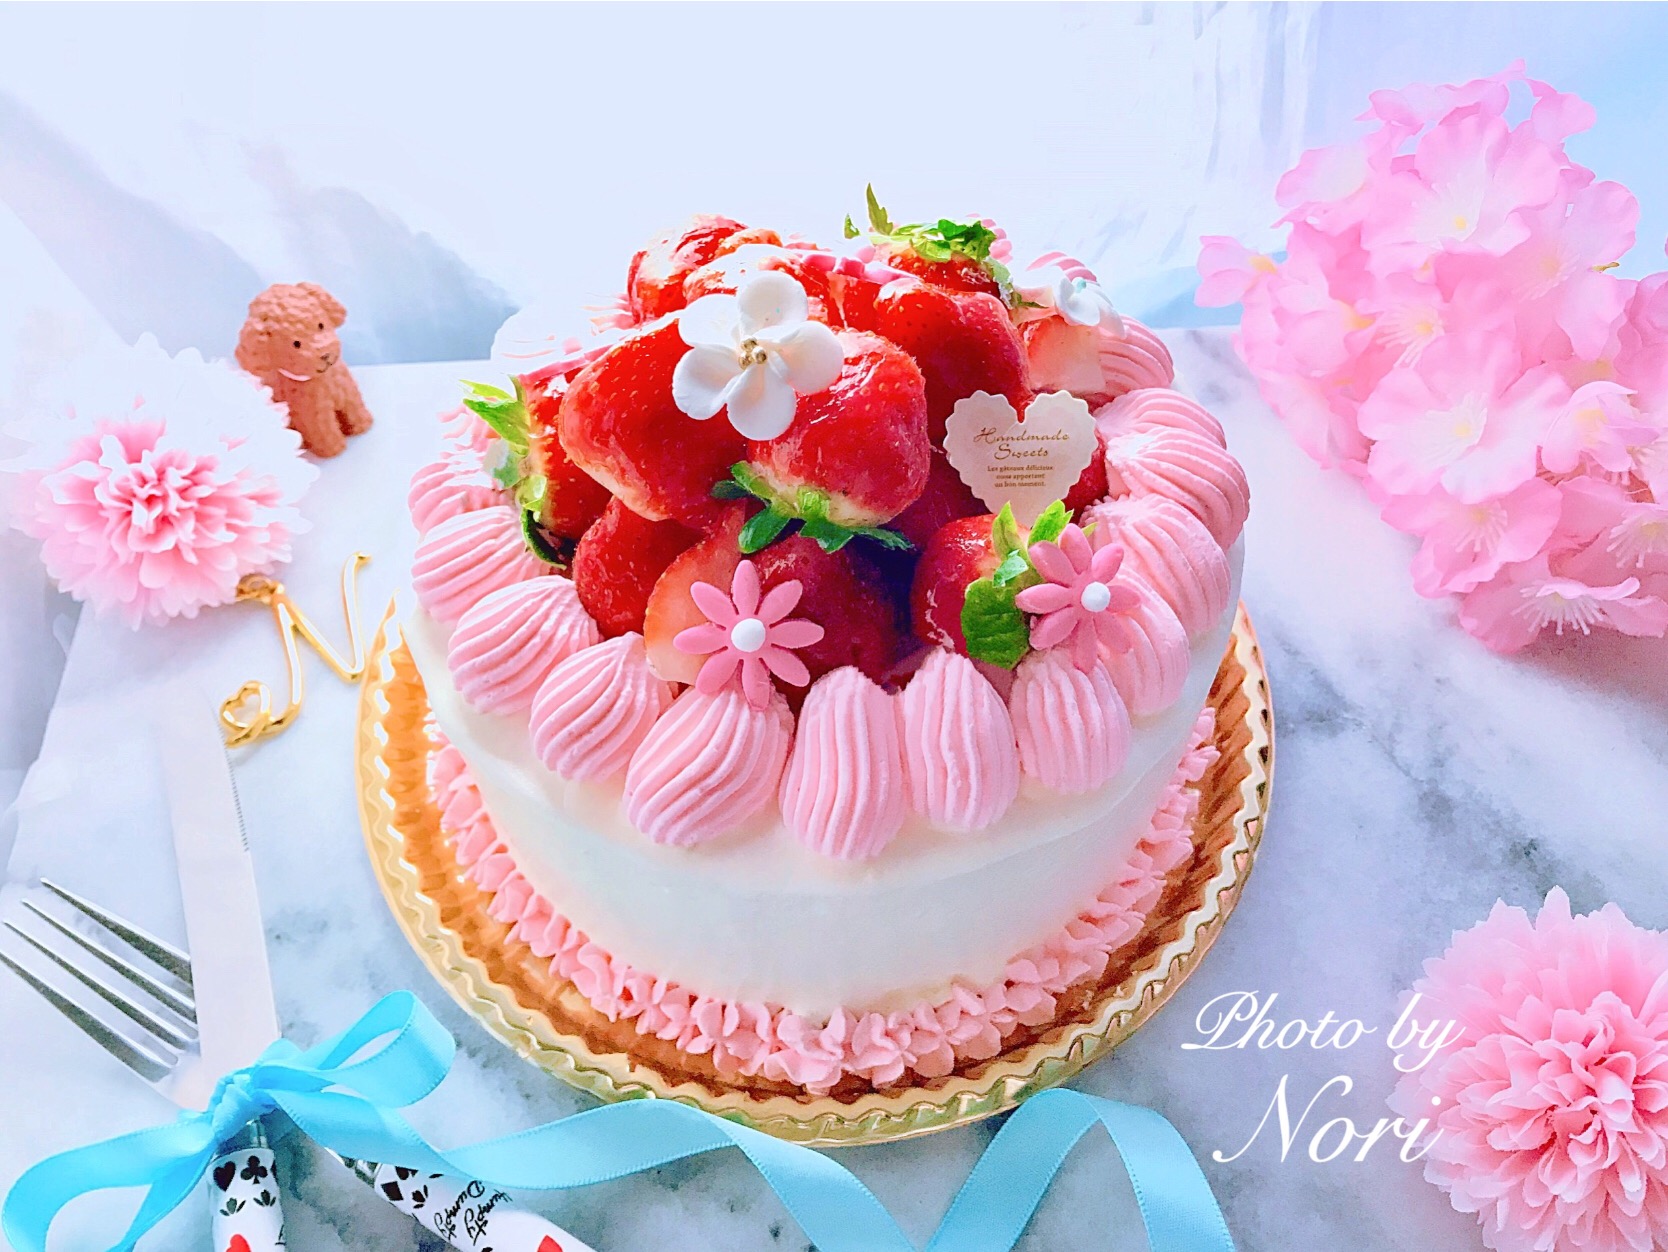 ストロベリーケーキデコレーションケーキ ケーキ 誕生日誕生日ケーキイチゴイチゴのショートケーキ ストロベリーショートケーキケーキ Nori Er3425 Snapdish スナップディッシュ Id B9984a